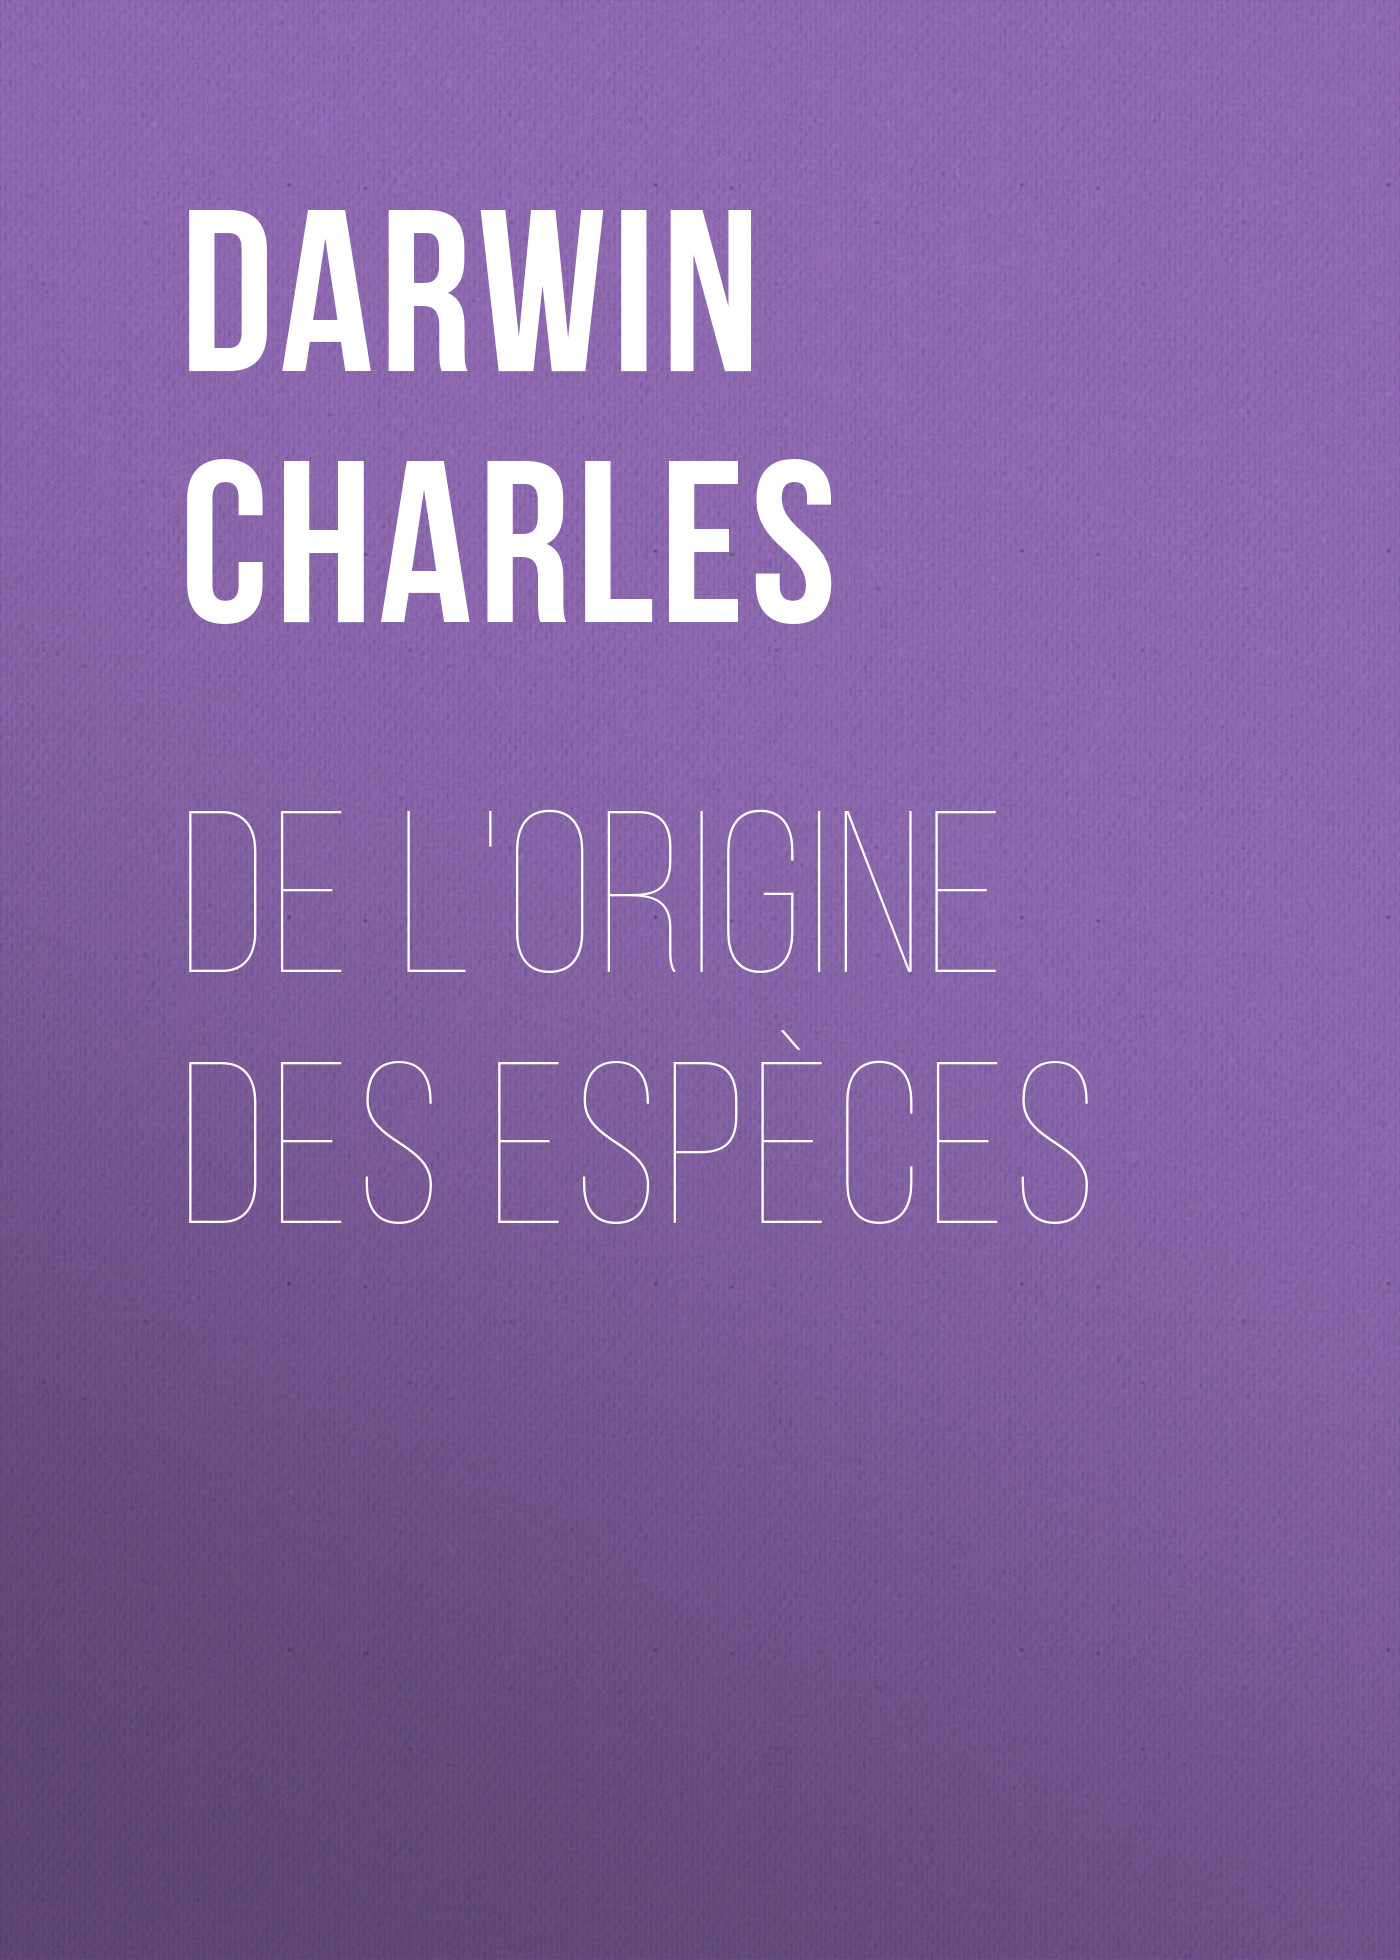 Книга De l'origine des espèces из серии , созданная Charles Darwin, может относится к жанру Зарубежная старинная литература, Зарубежная классика. Стоимость электронной книги De l'origine des espèces с идентификатором 25091764 составляет 0 руб.